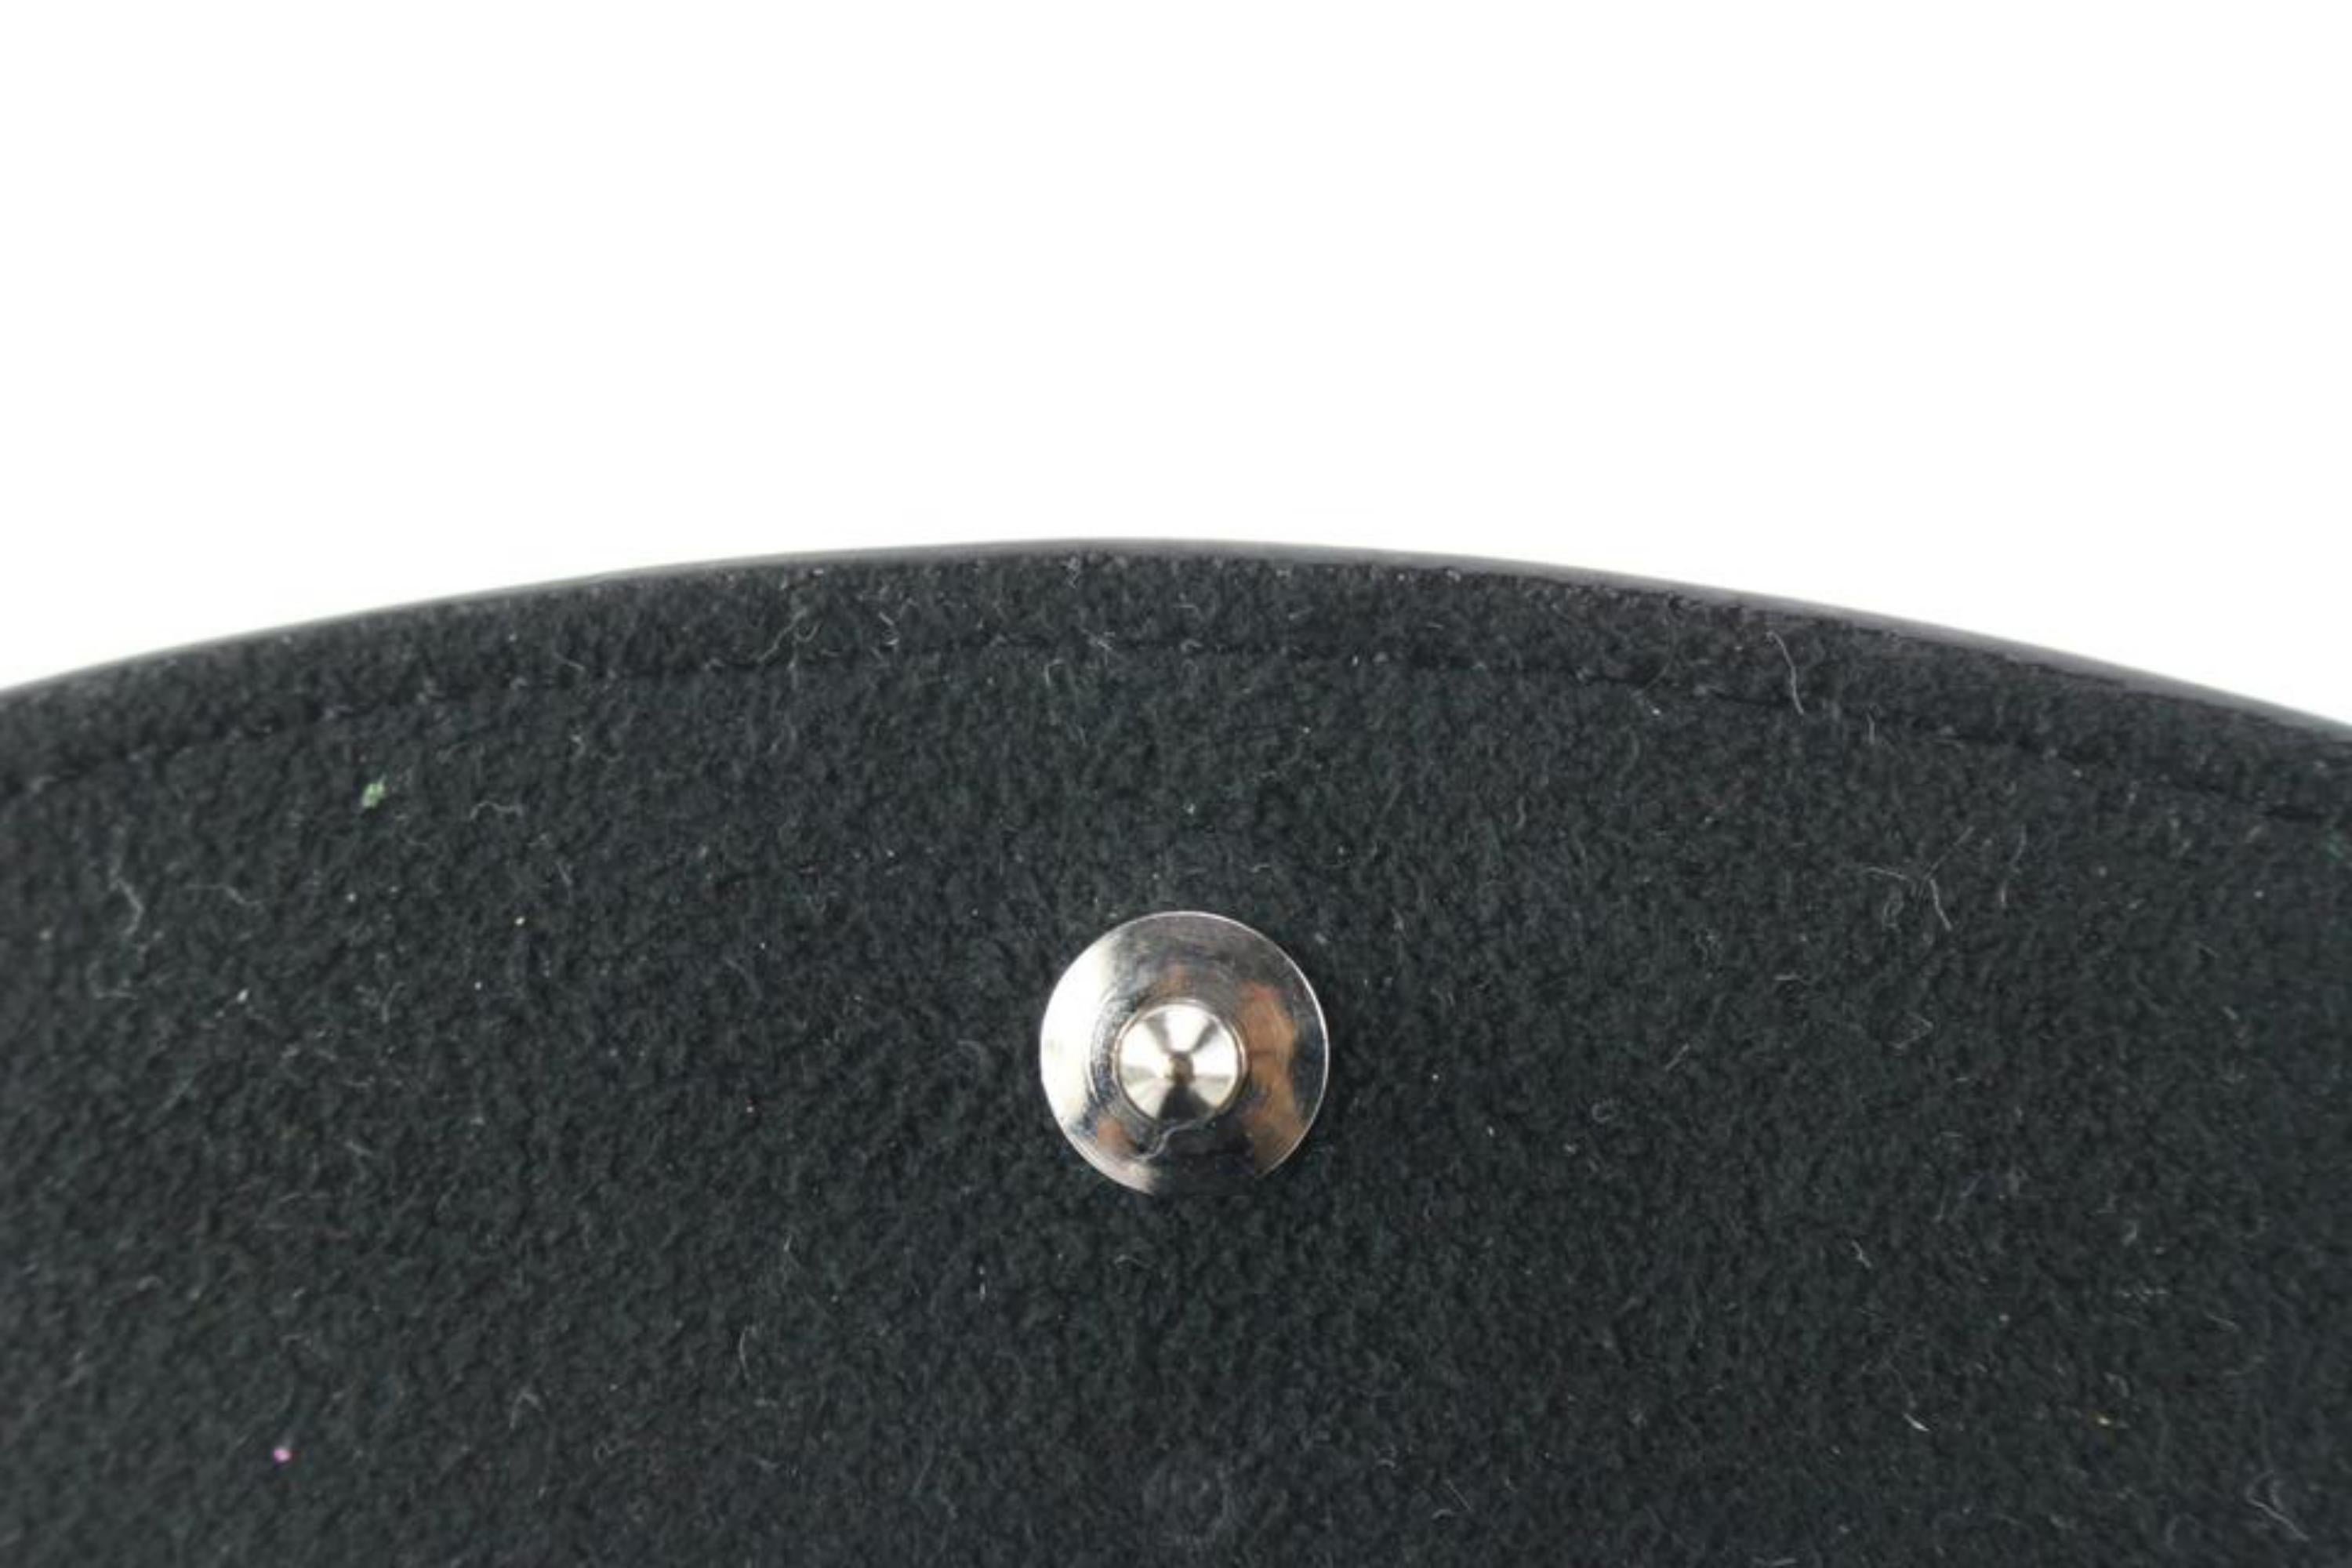 Louis Vuitton Damier Graphite Cufflink Pouch Case Holder 96lk616s For Sale 1